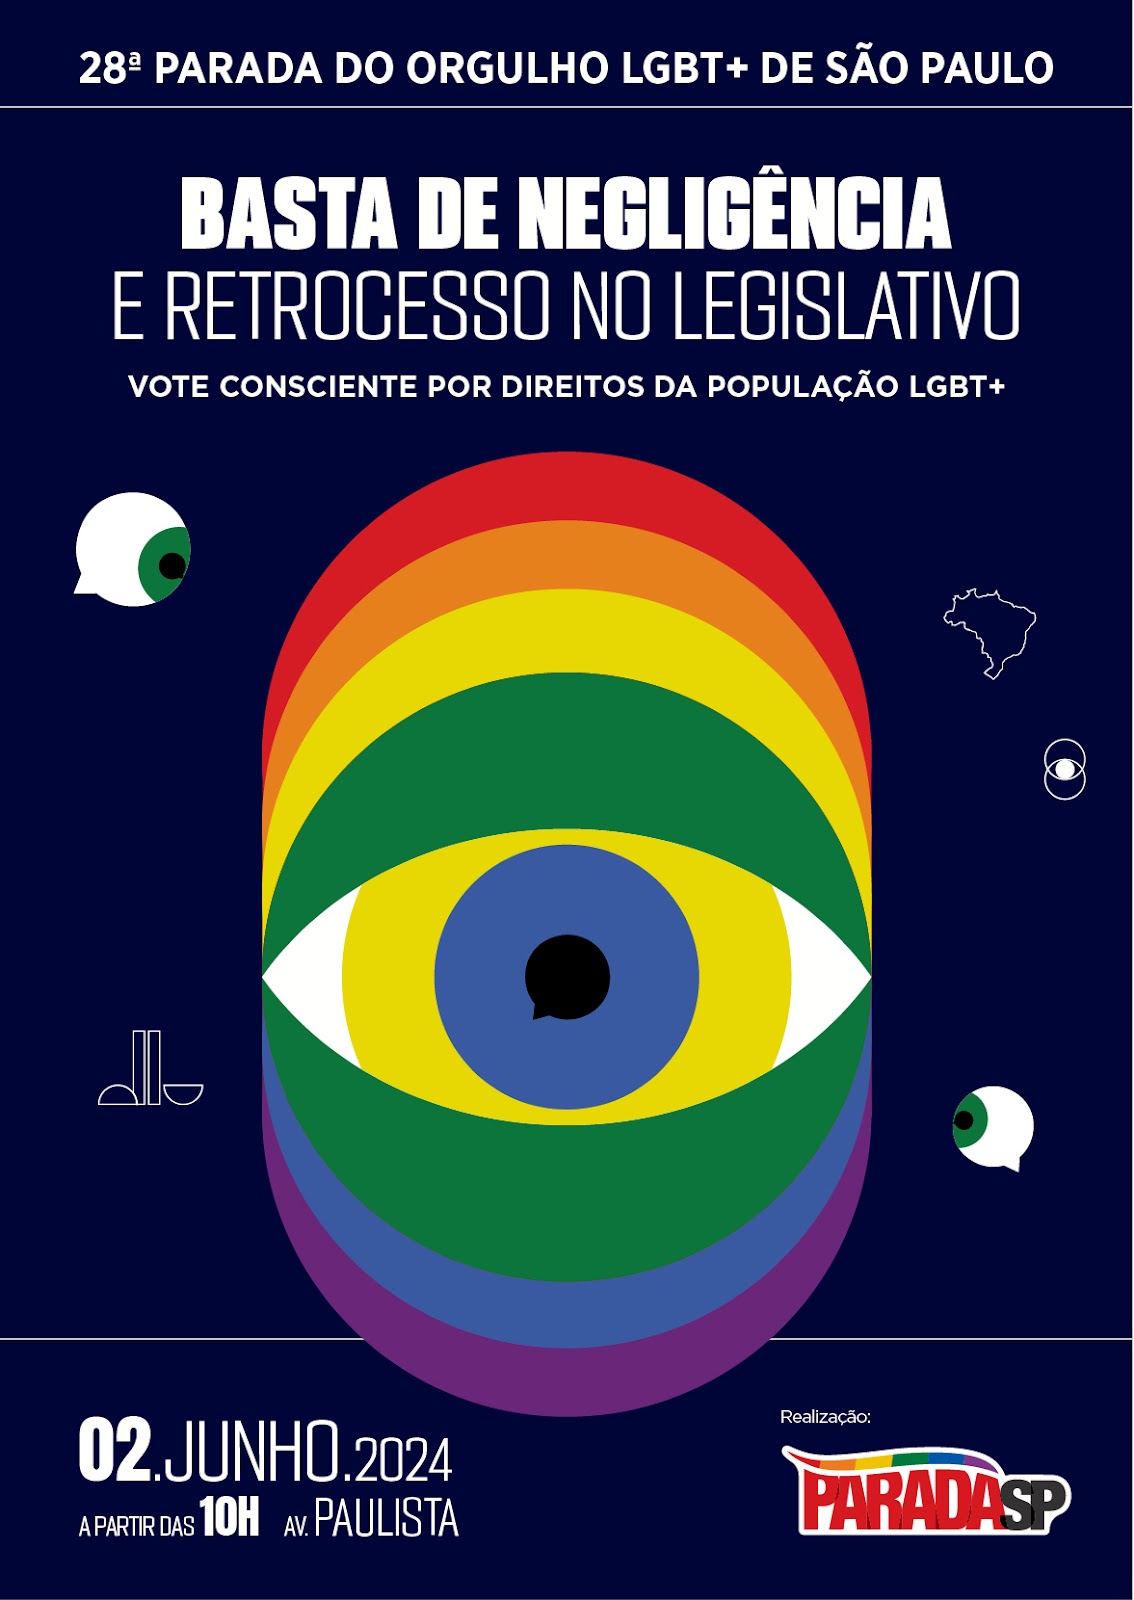 28ª Parada do Orgulho LGBT+ de São Paulo - cartaz, pôster de 2024